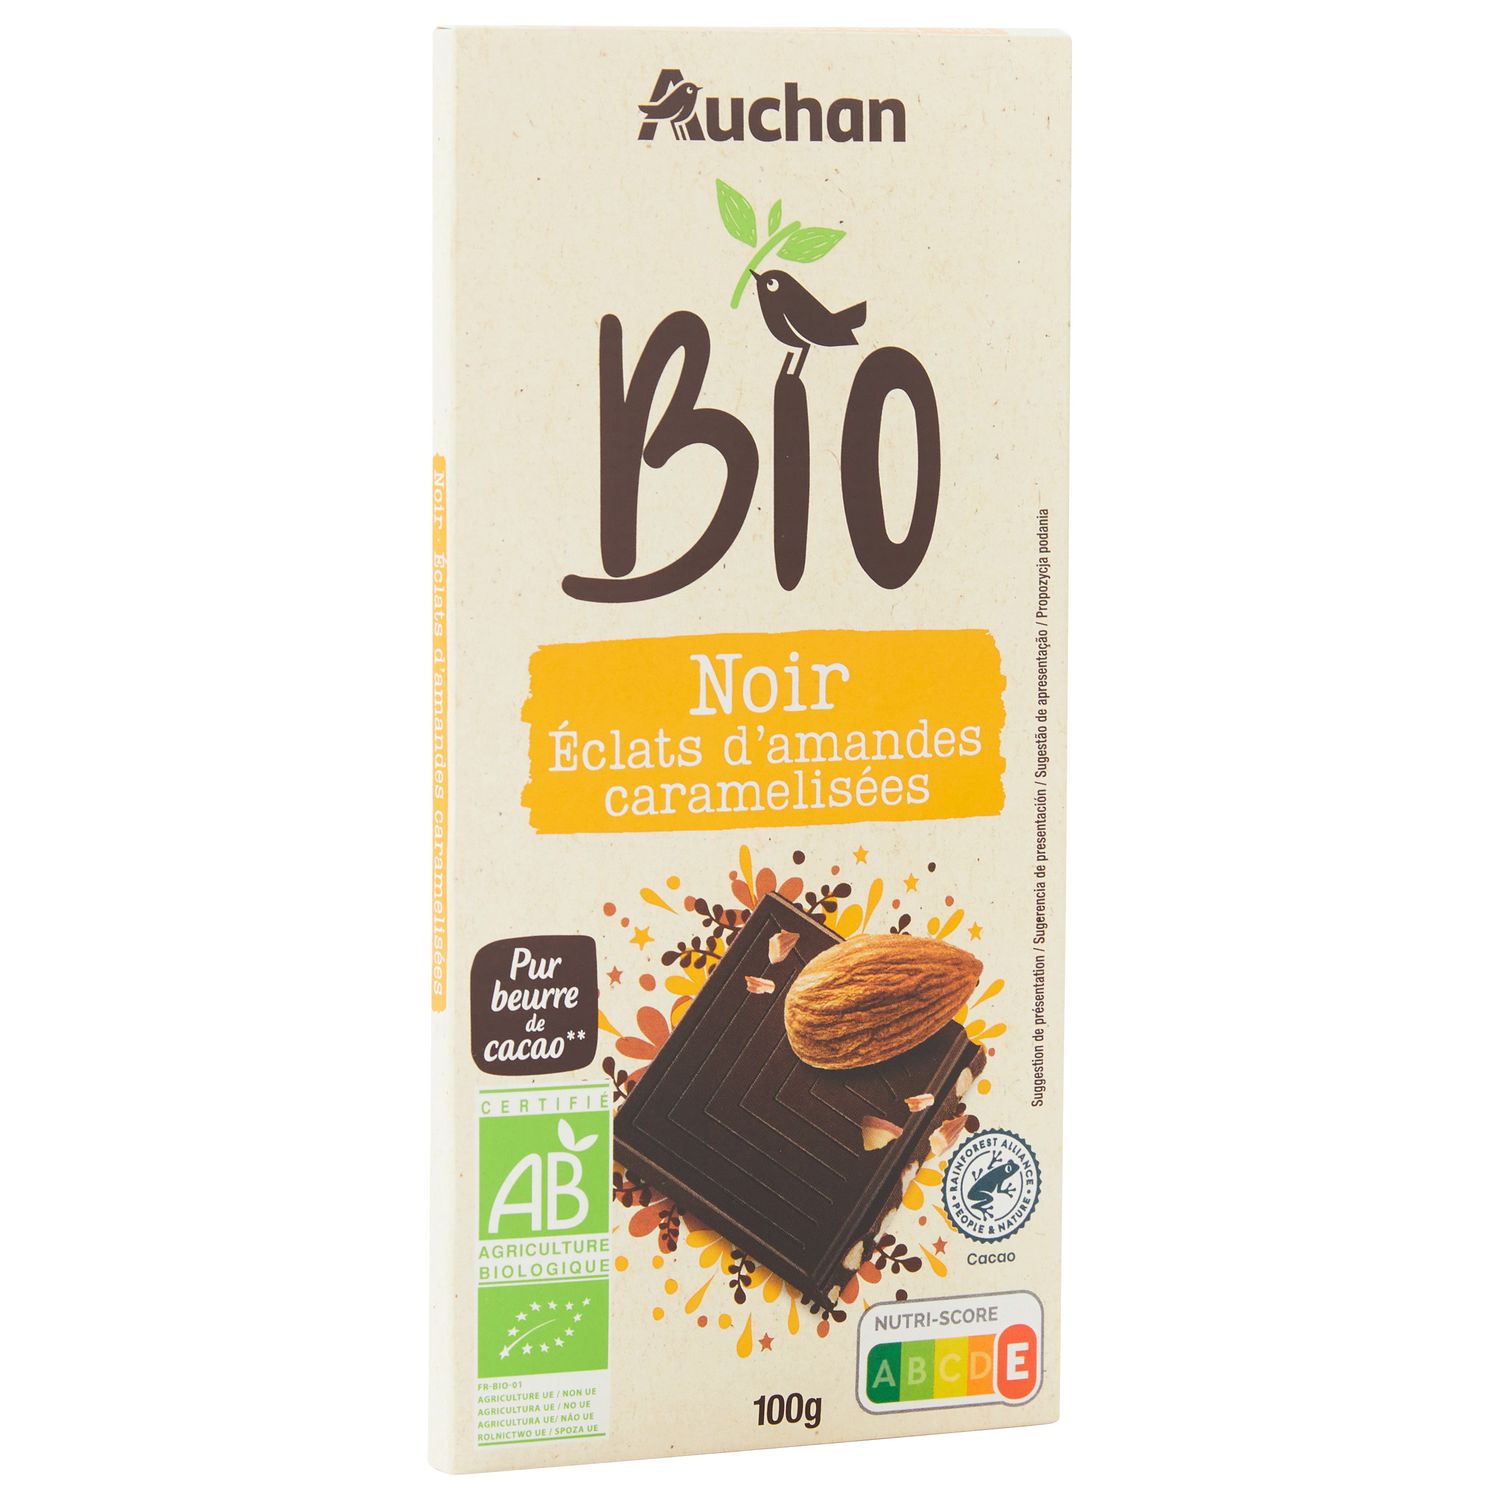 Saveurs & Nature -- Tablette de chocolat noir au lait d'amande bio